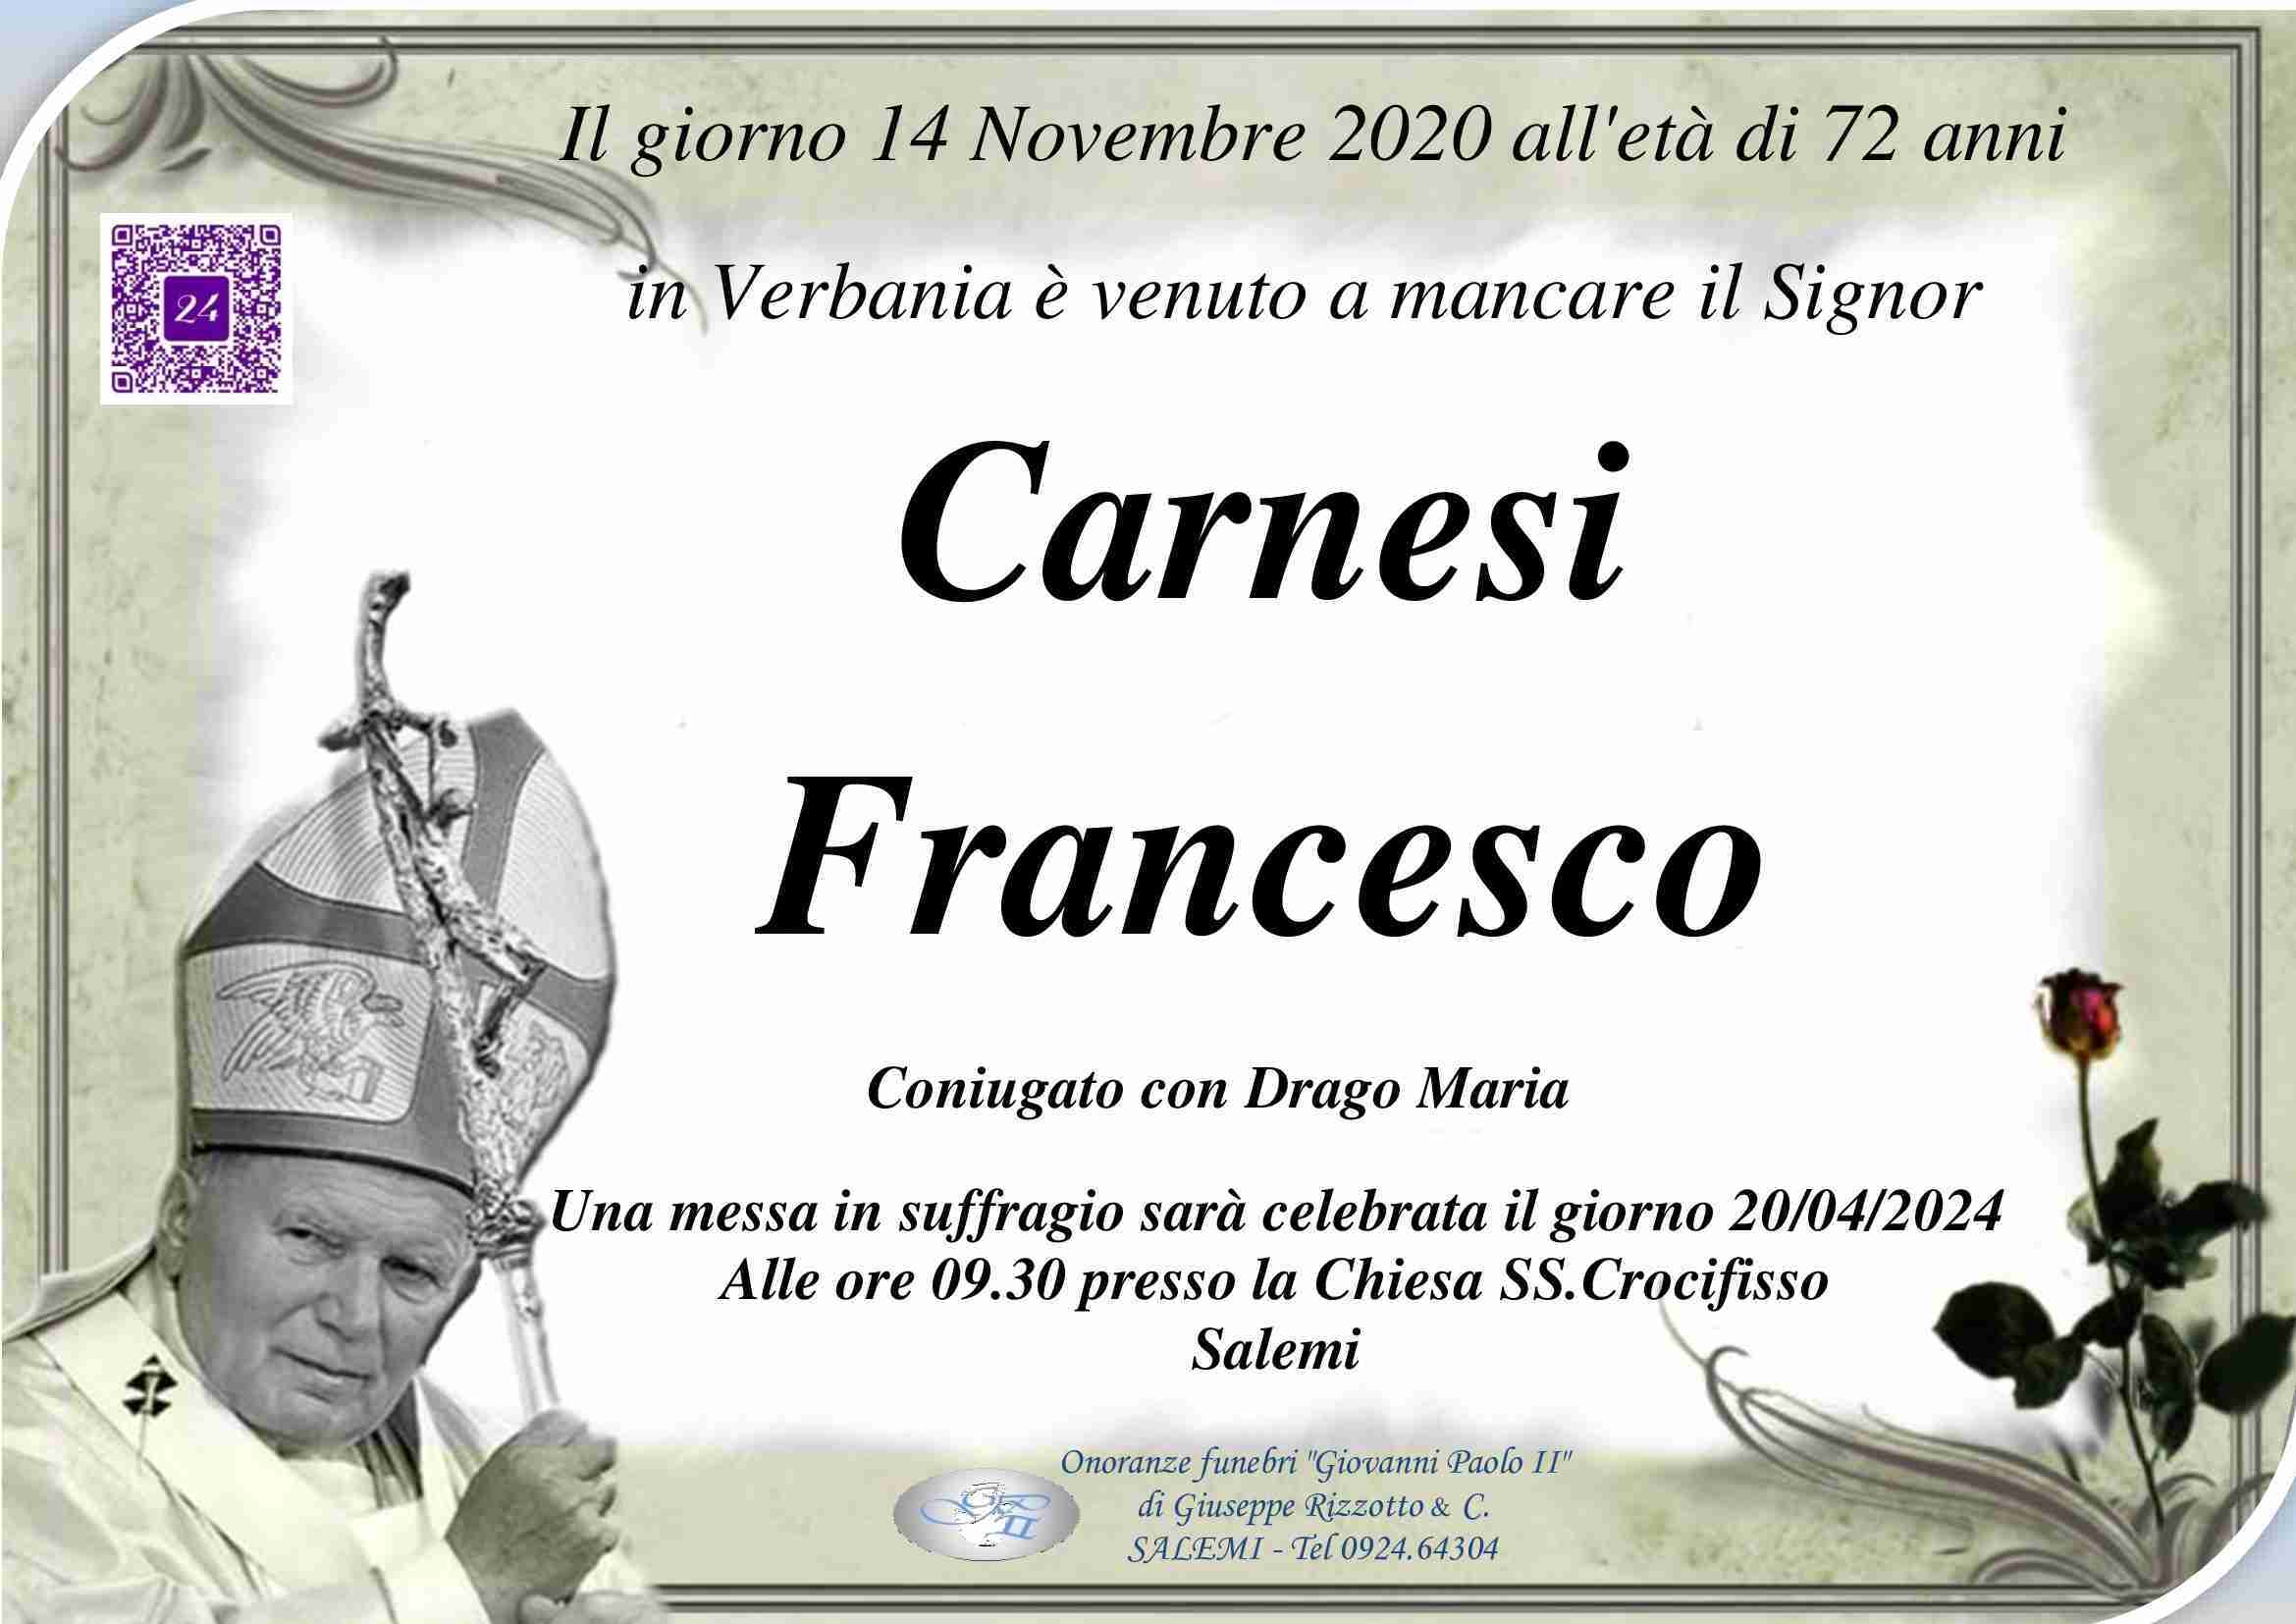 Francesco Carnesi